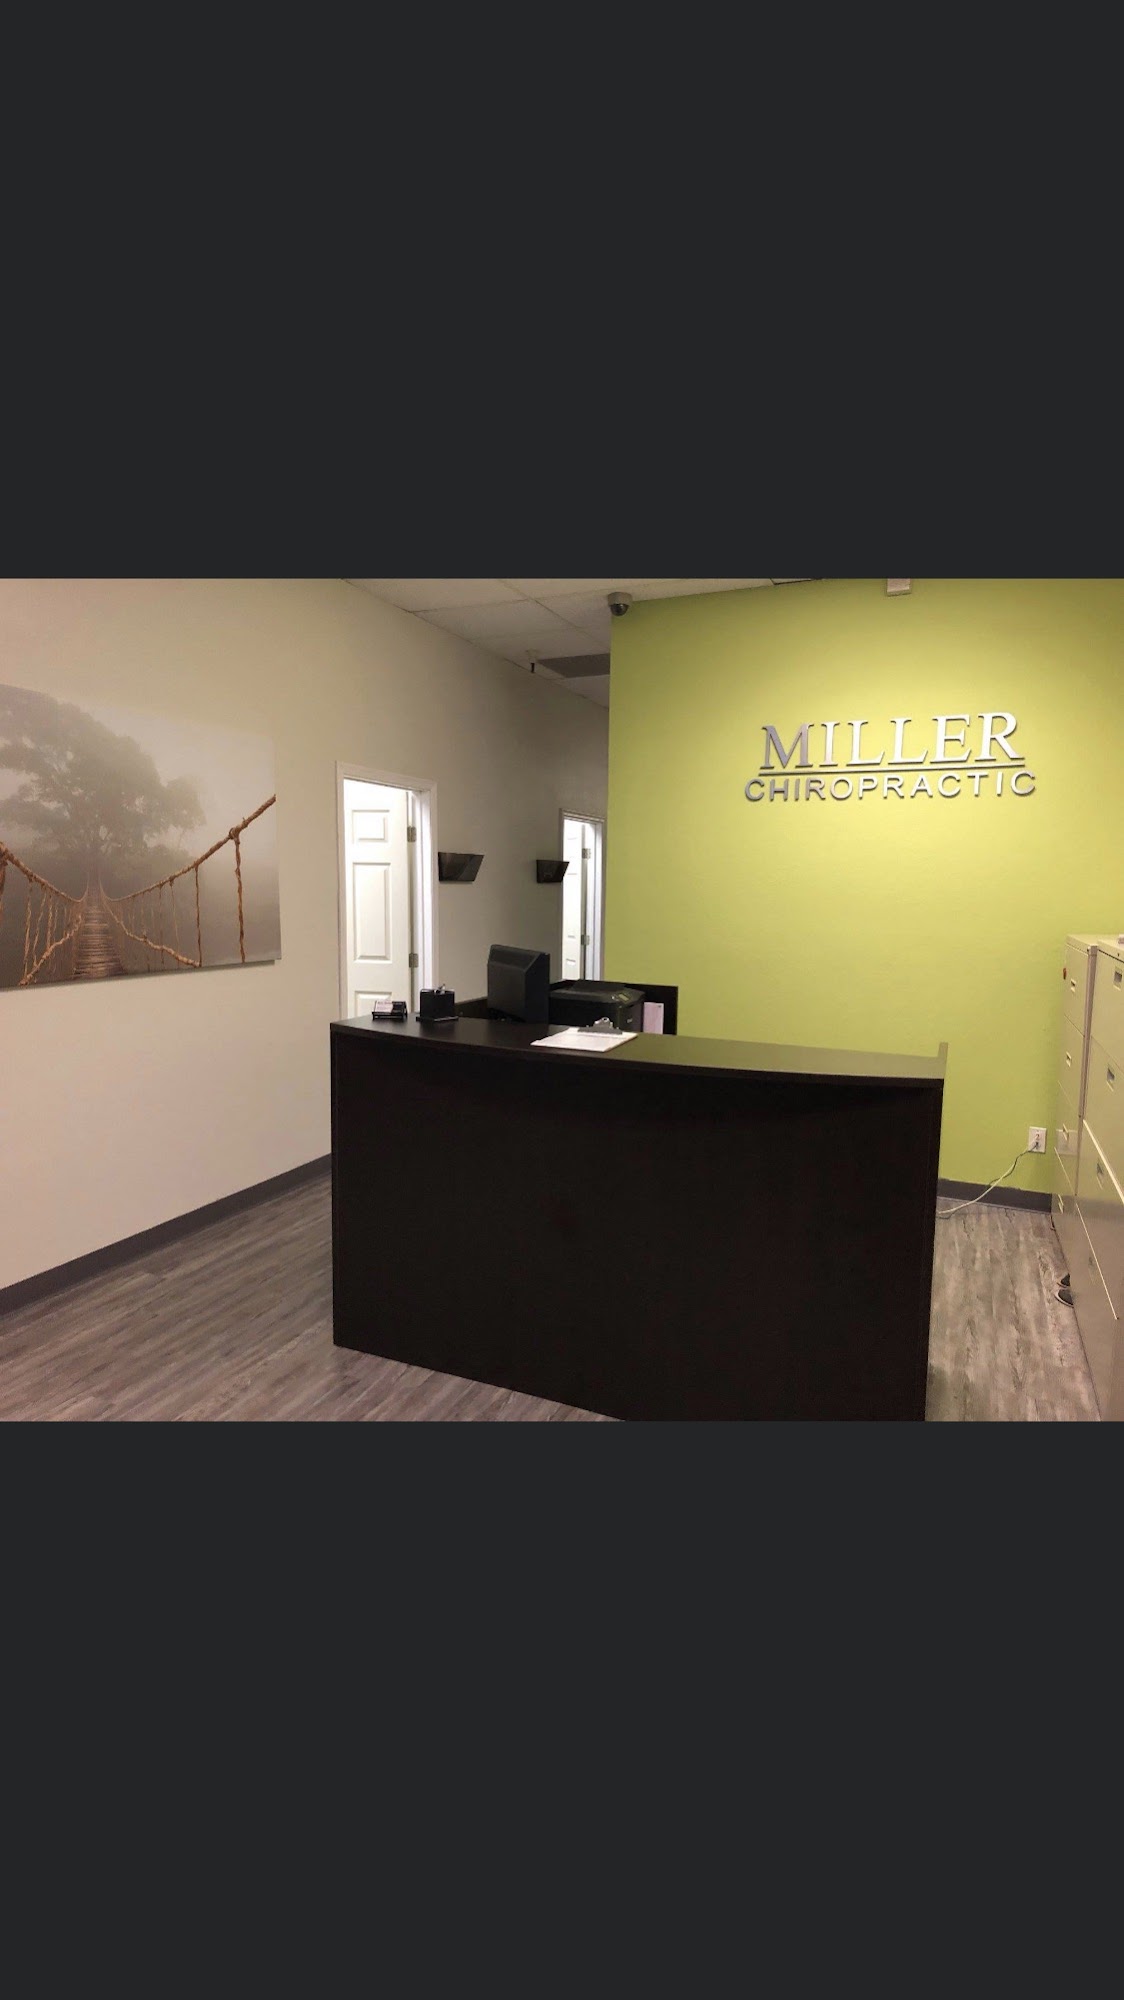 Miller Chiropractic Center